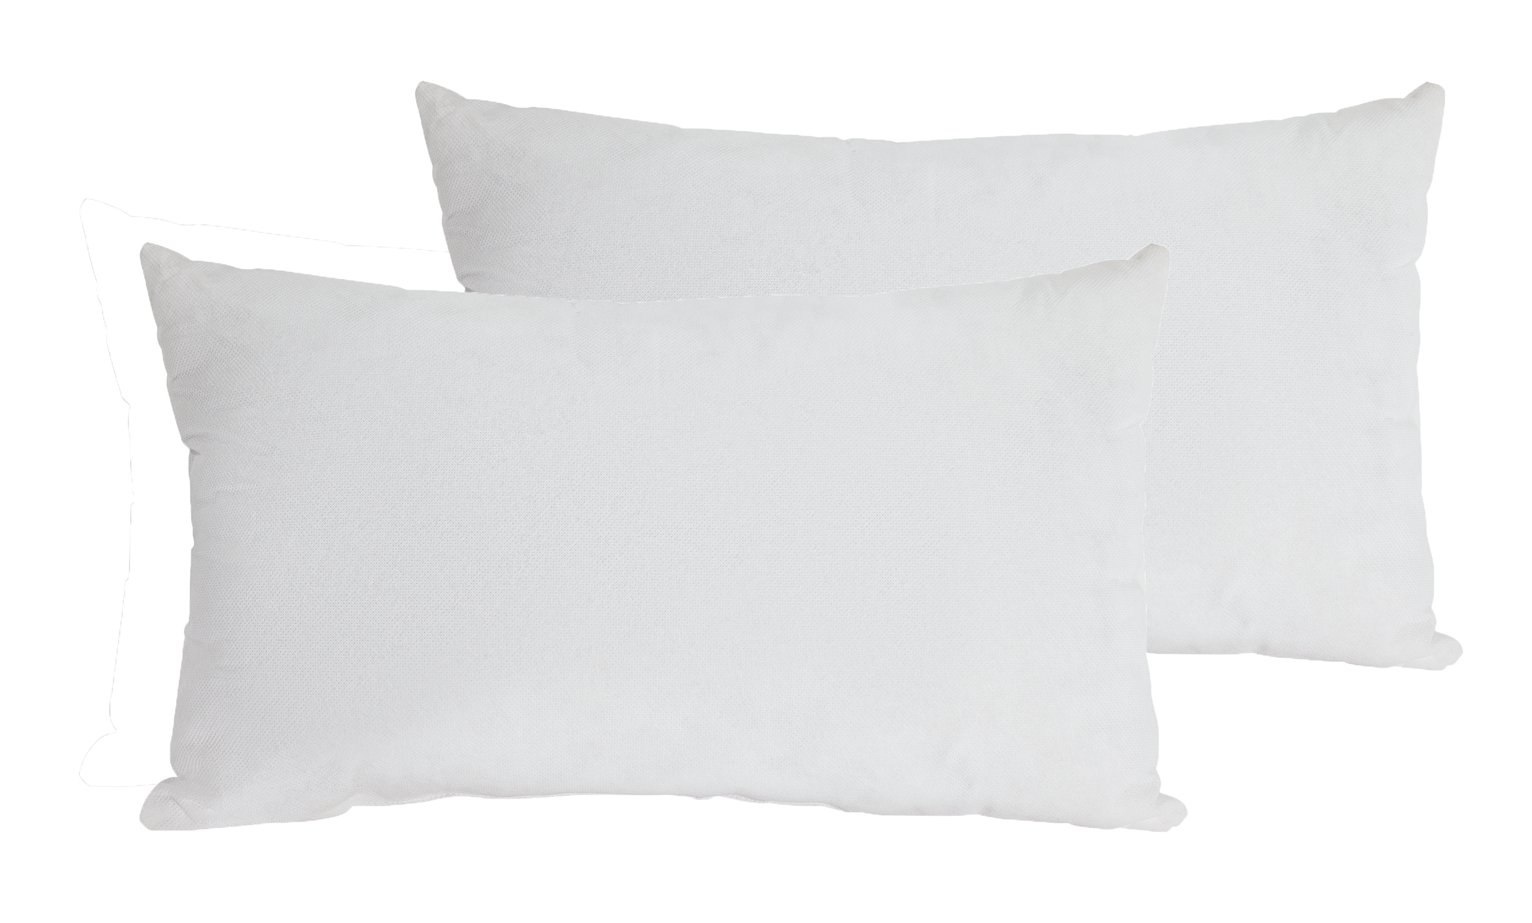 Argos Home Plain Cushion Pads - 2 Pack - White - 30x50cm